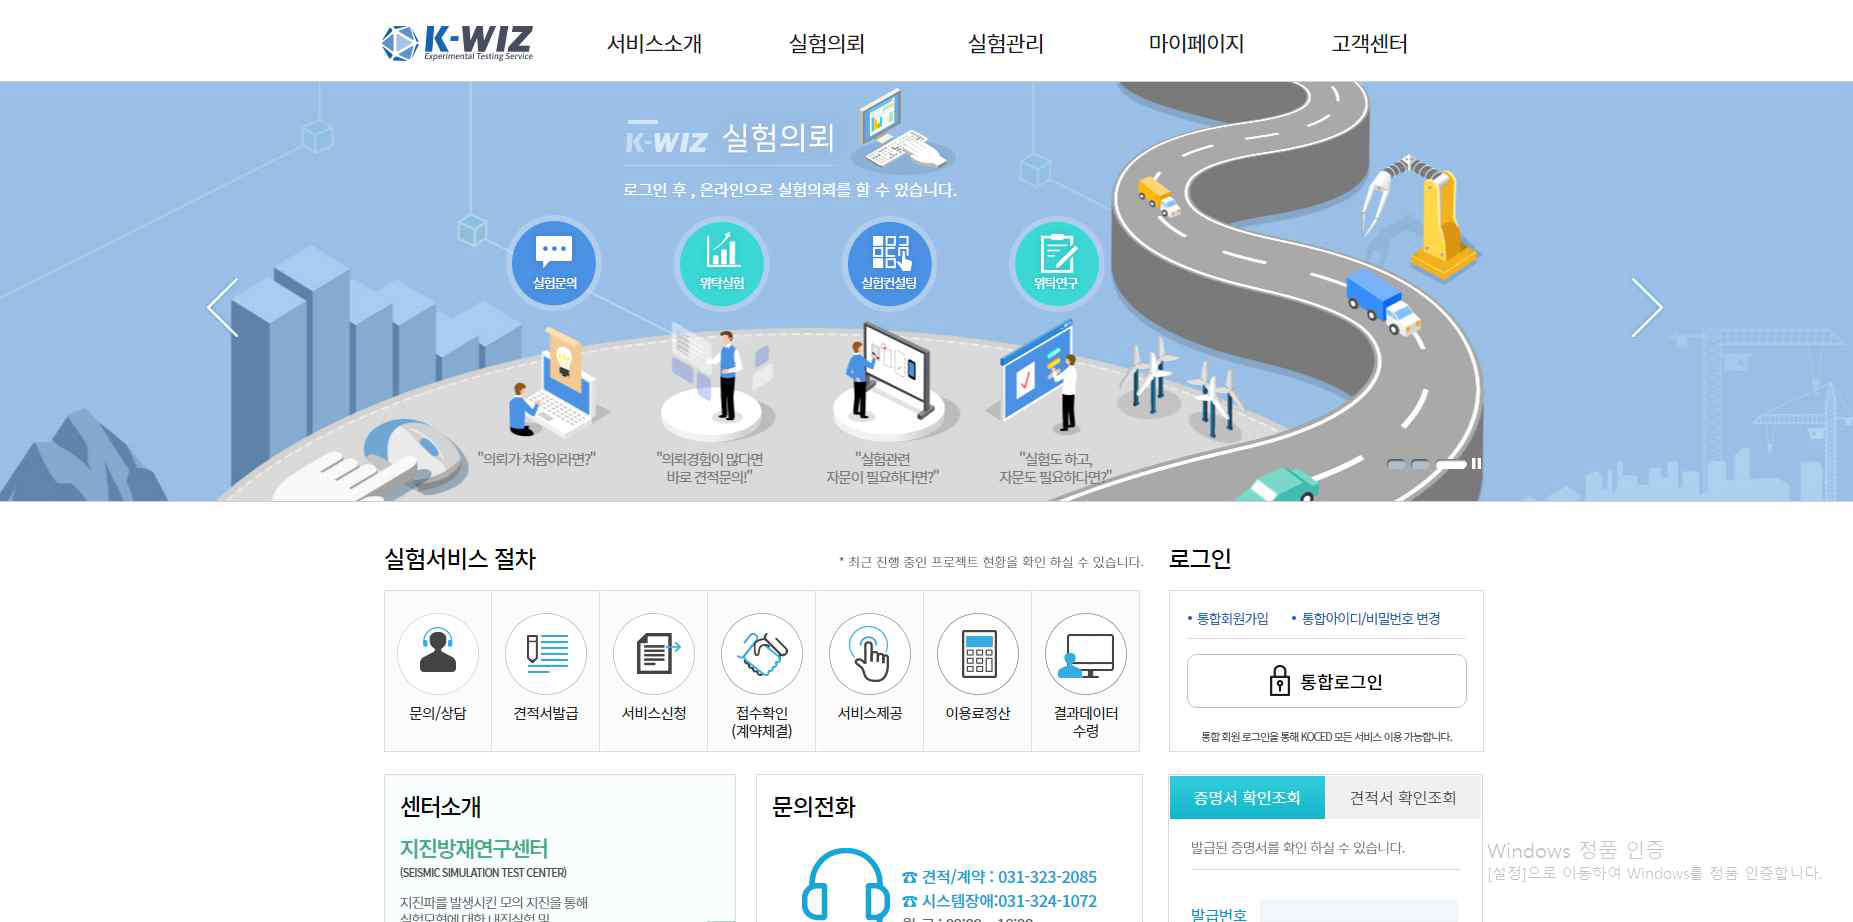 국토교통과학기술진흥원 K-WIZ 홈페이지